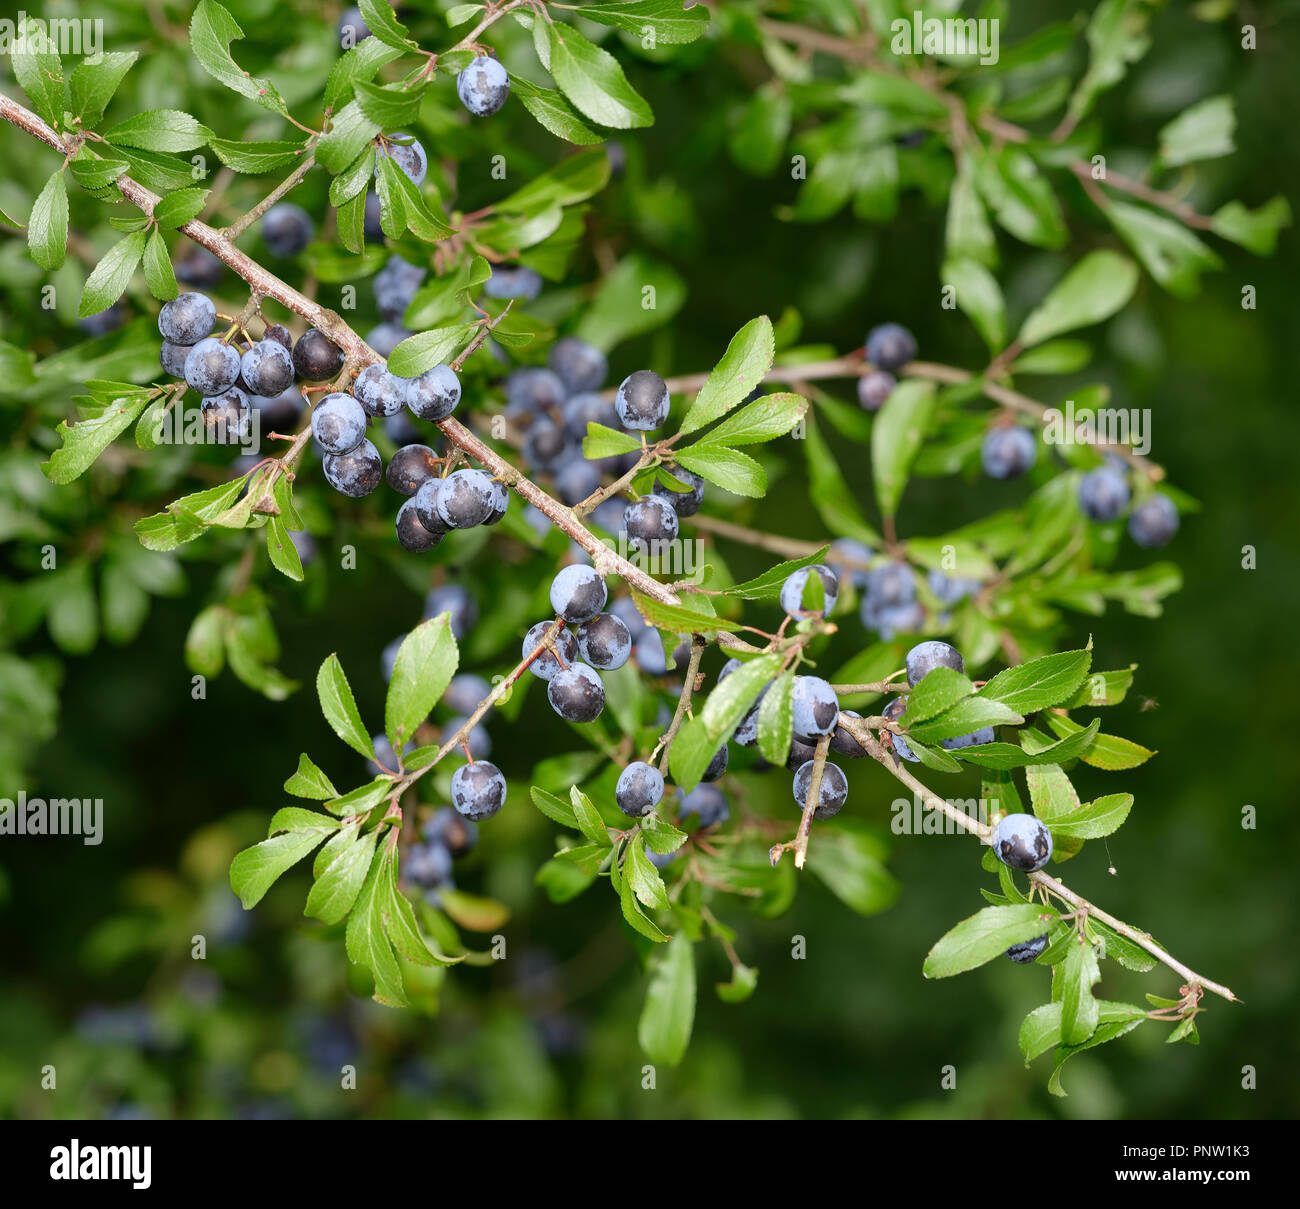 Blackthorn Fruit or Sloe - Prunus spinosa Stock Photo